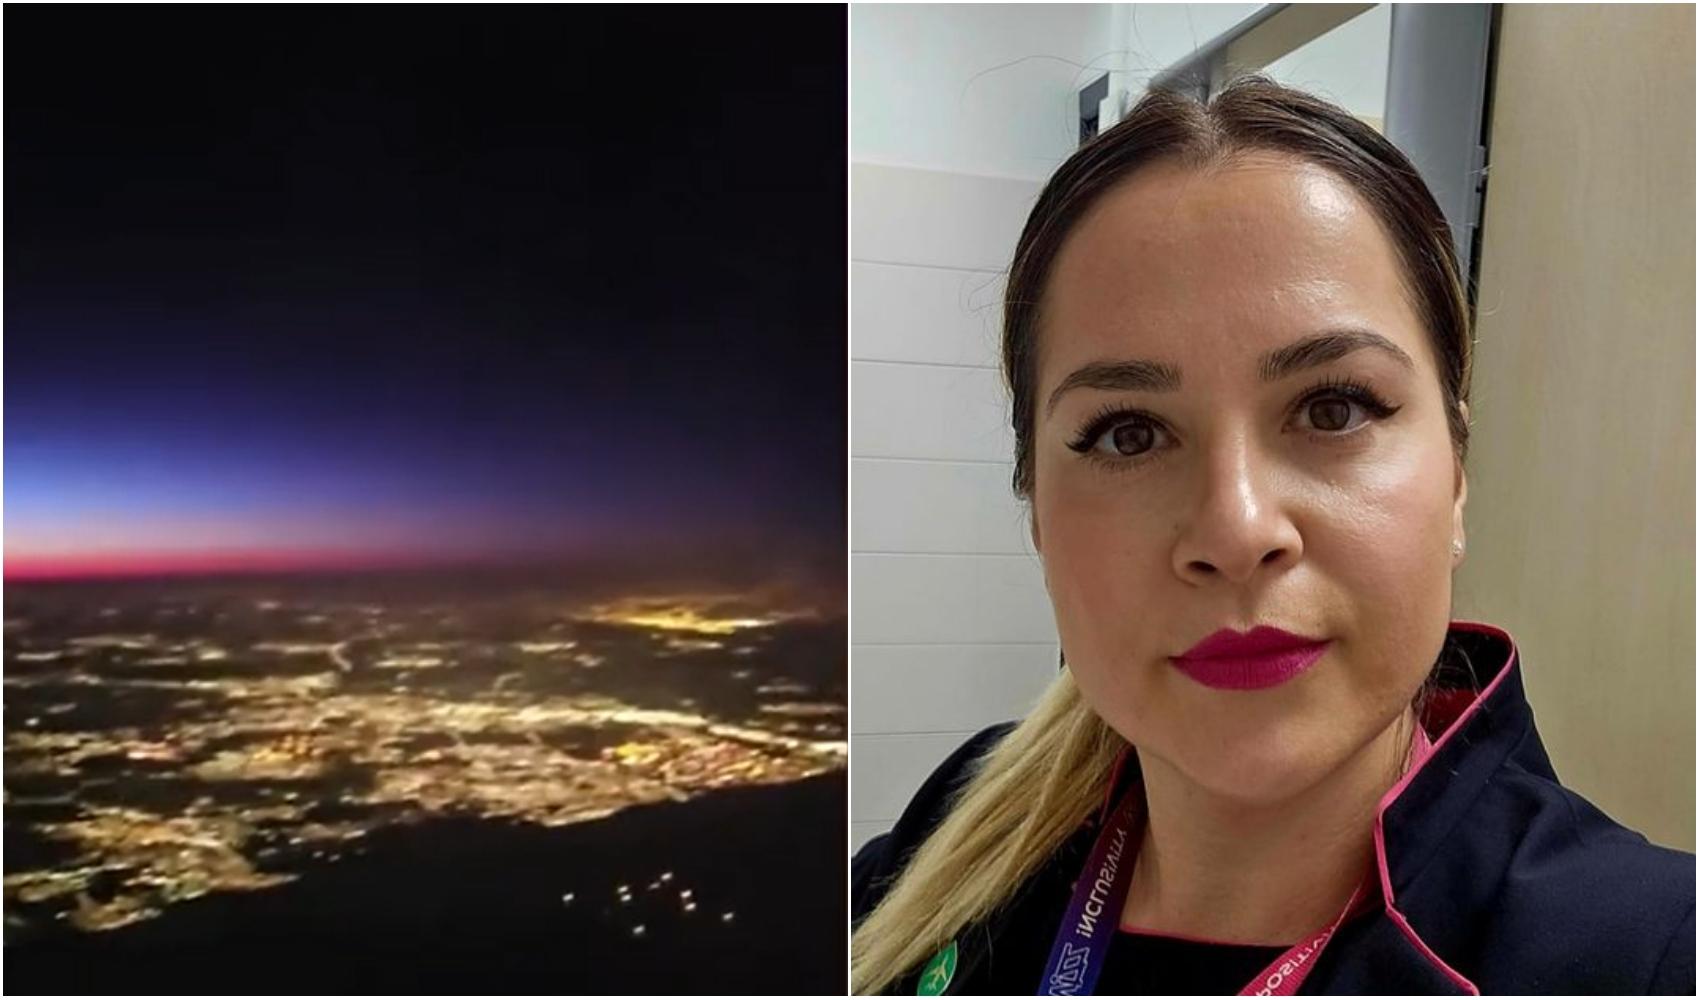 O stewardesă româncă a filmat un OZN pe cer, în timpul zborului. Imaginile fac înconjurul lumii și nimeni nu găsește o explicație